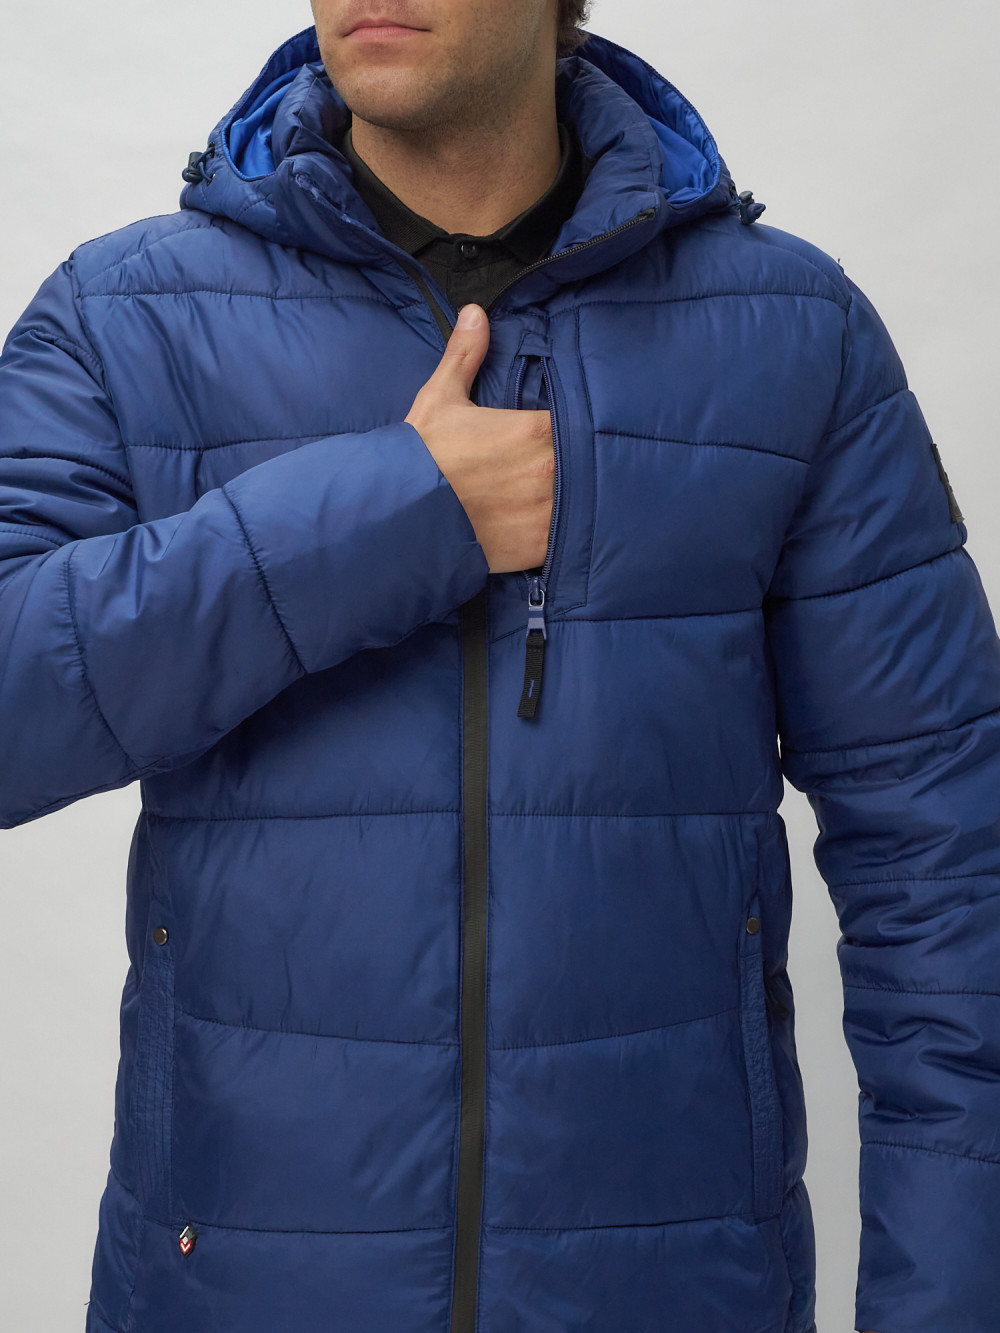 Купить куртку мужскую спортивную весеннюю оптом от производителя недорого в Москве 62186S 1